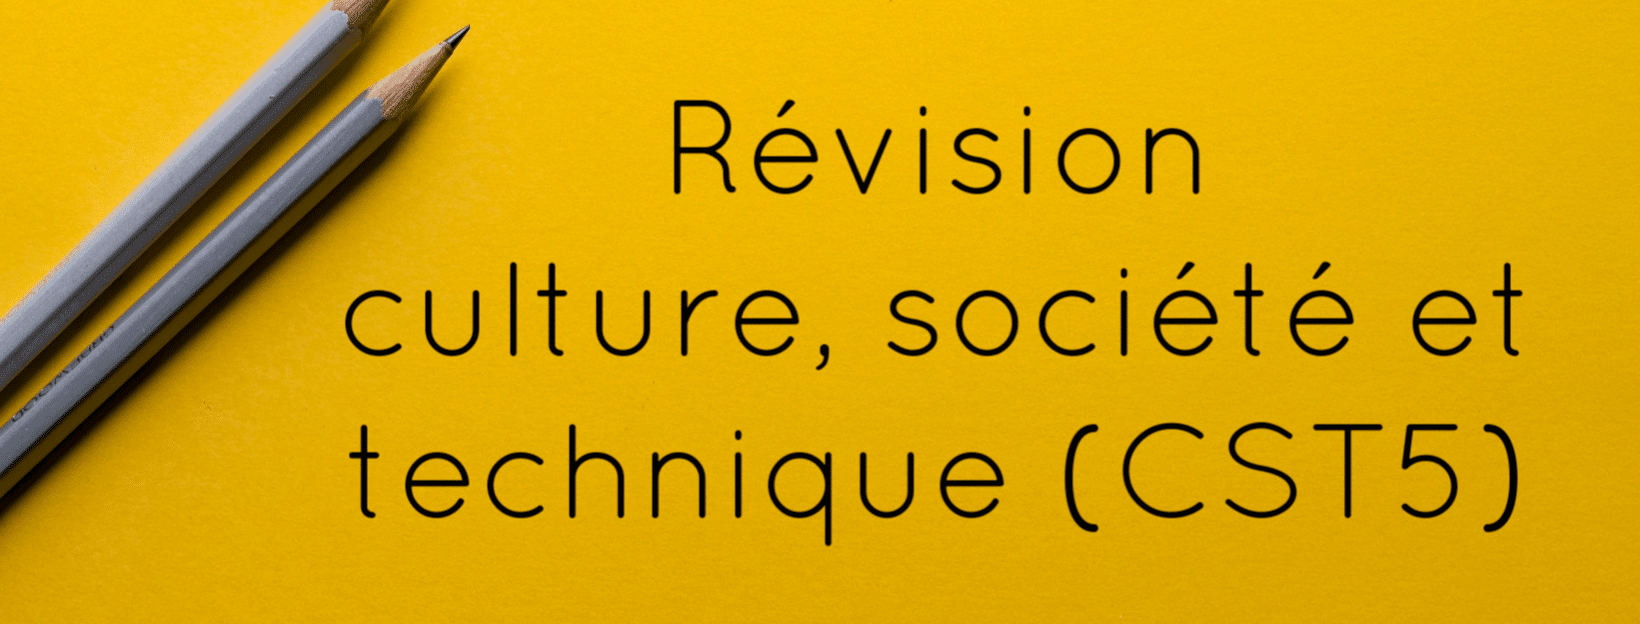 Révision culture, société et technique (CST5). SOSprof. SOSteacher